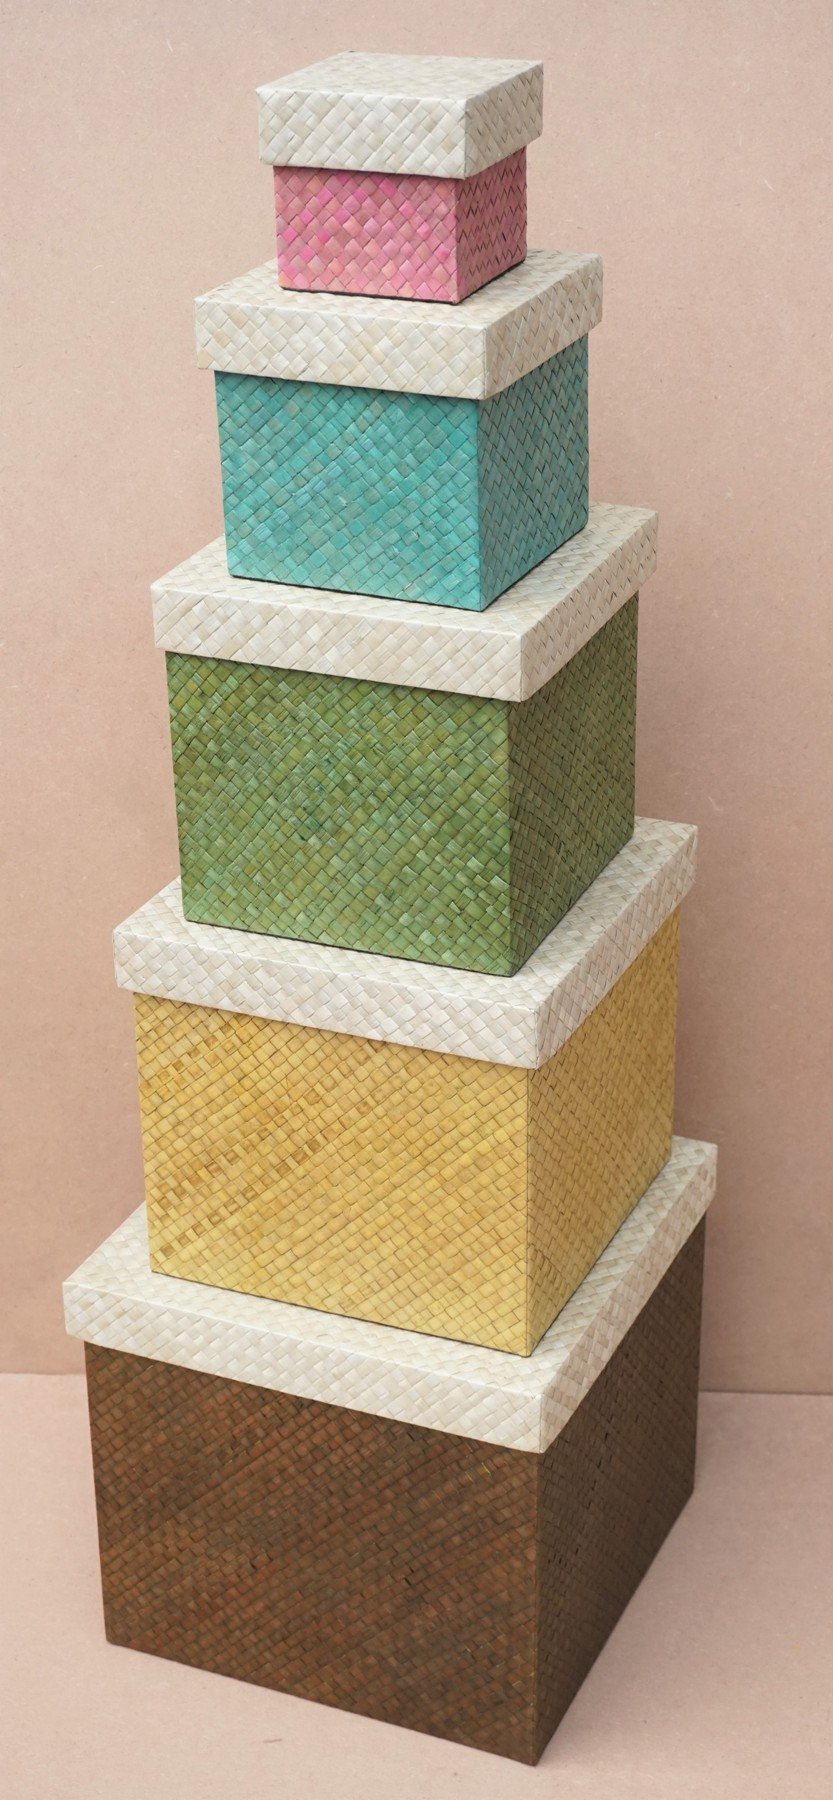 Pandanus square box natural top set of 5 handicraft